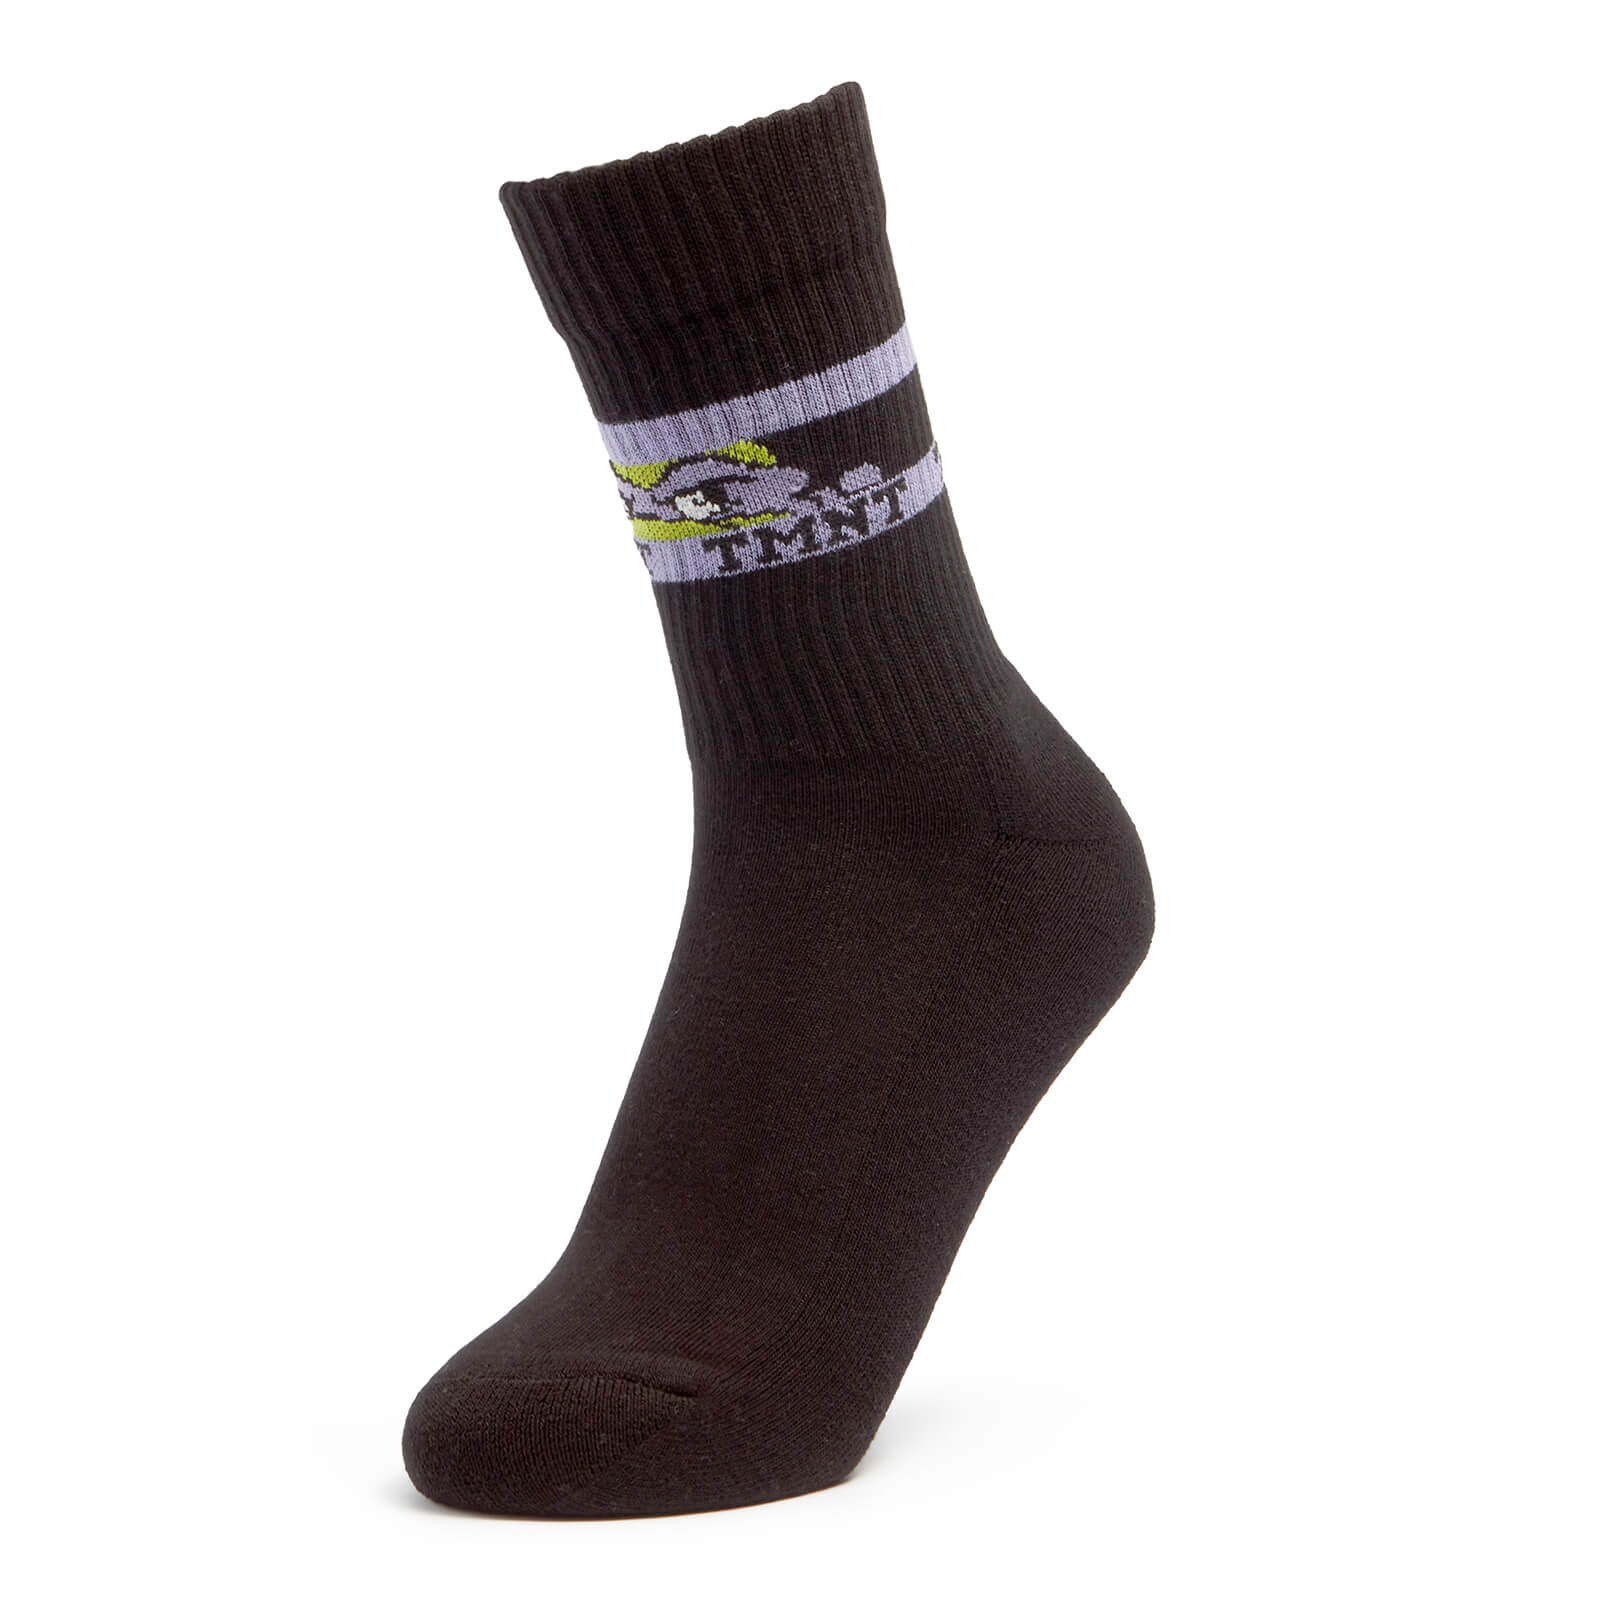 Men's Tmnt Sports Socks - Black - Uk 4-7.5